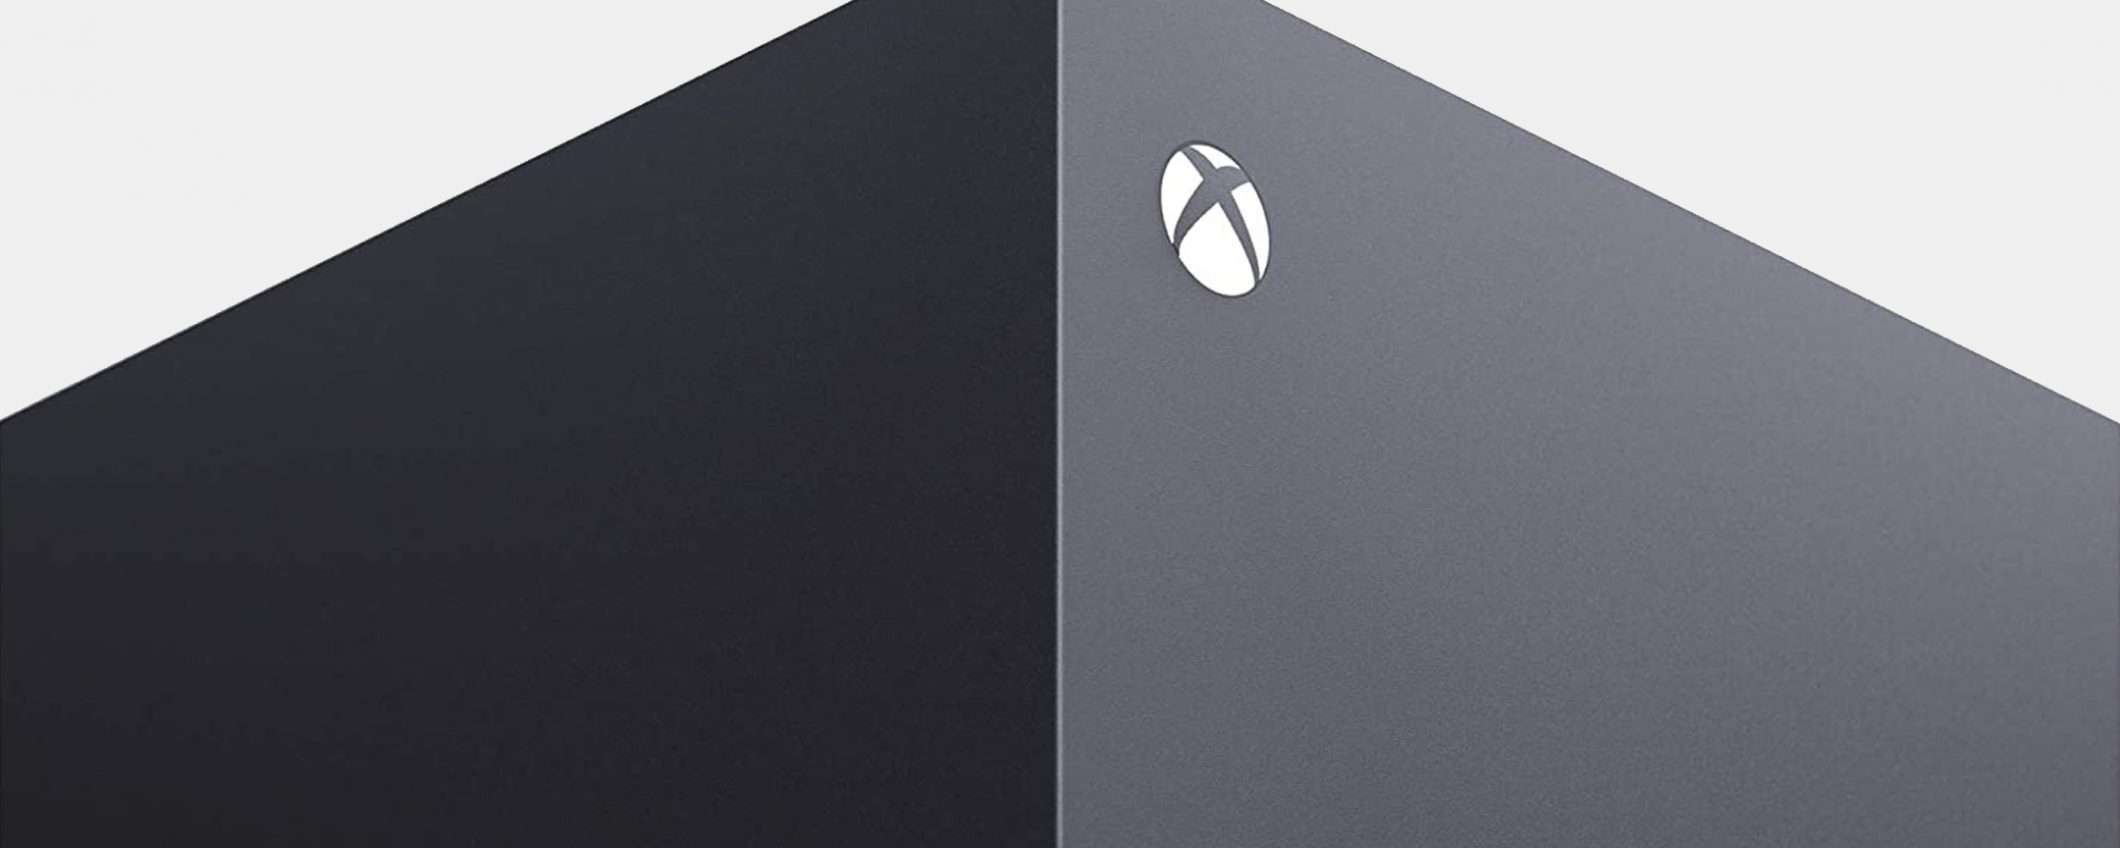 Xbox Series X disponibile su Amazon: ORA (update)